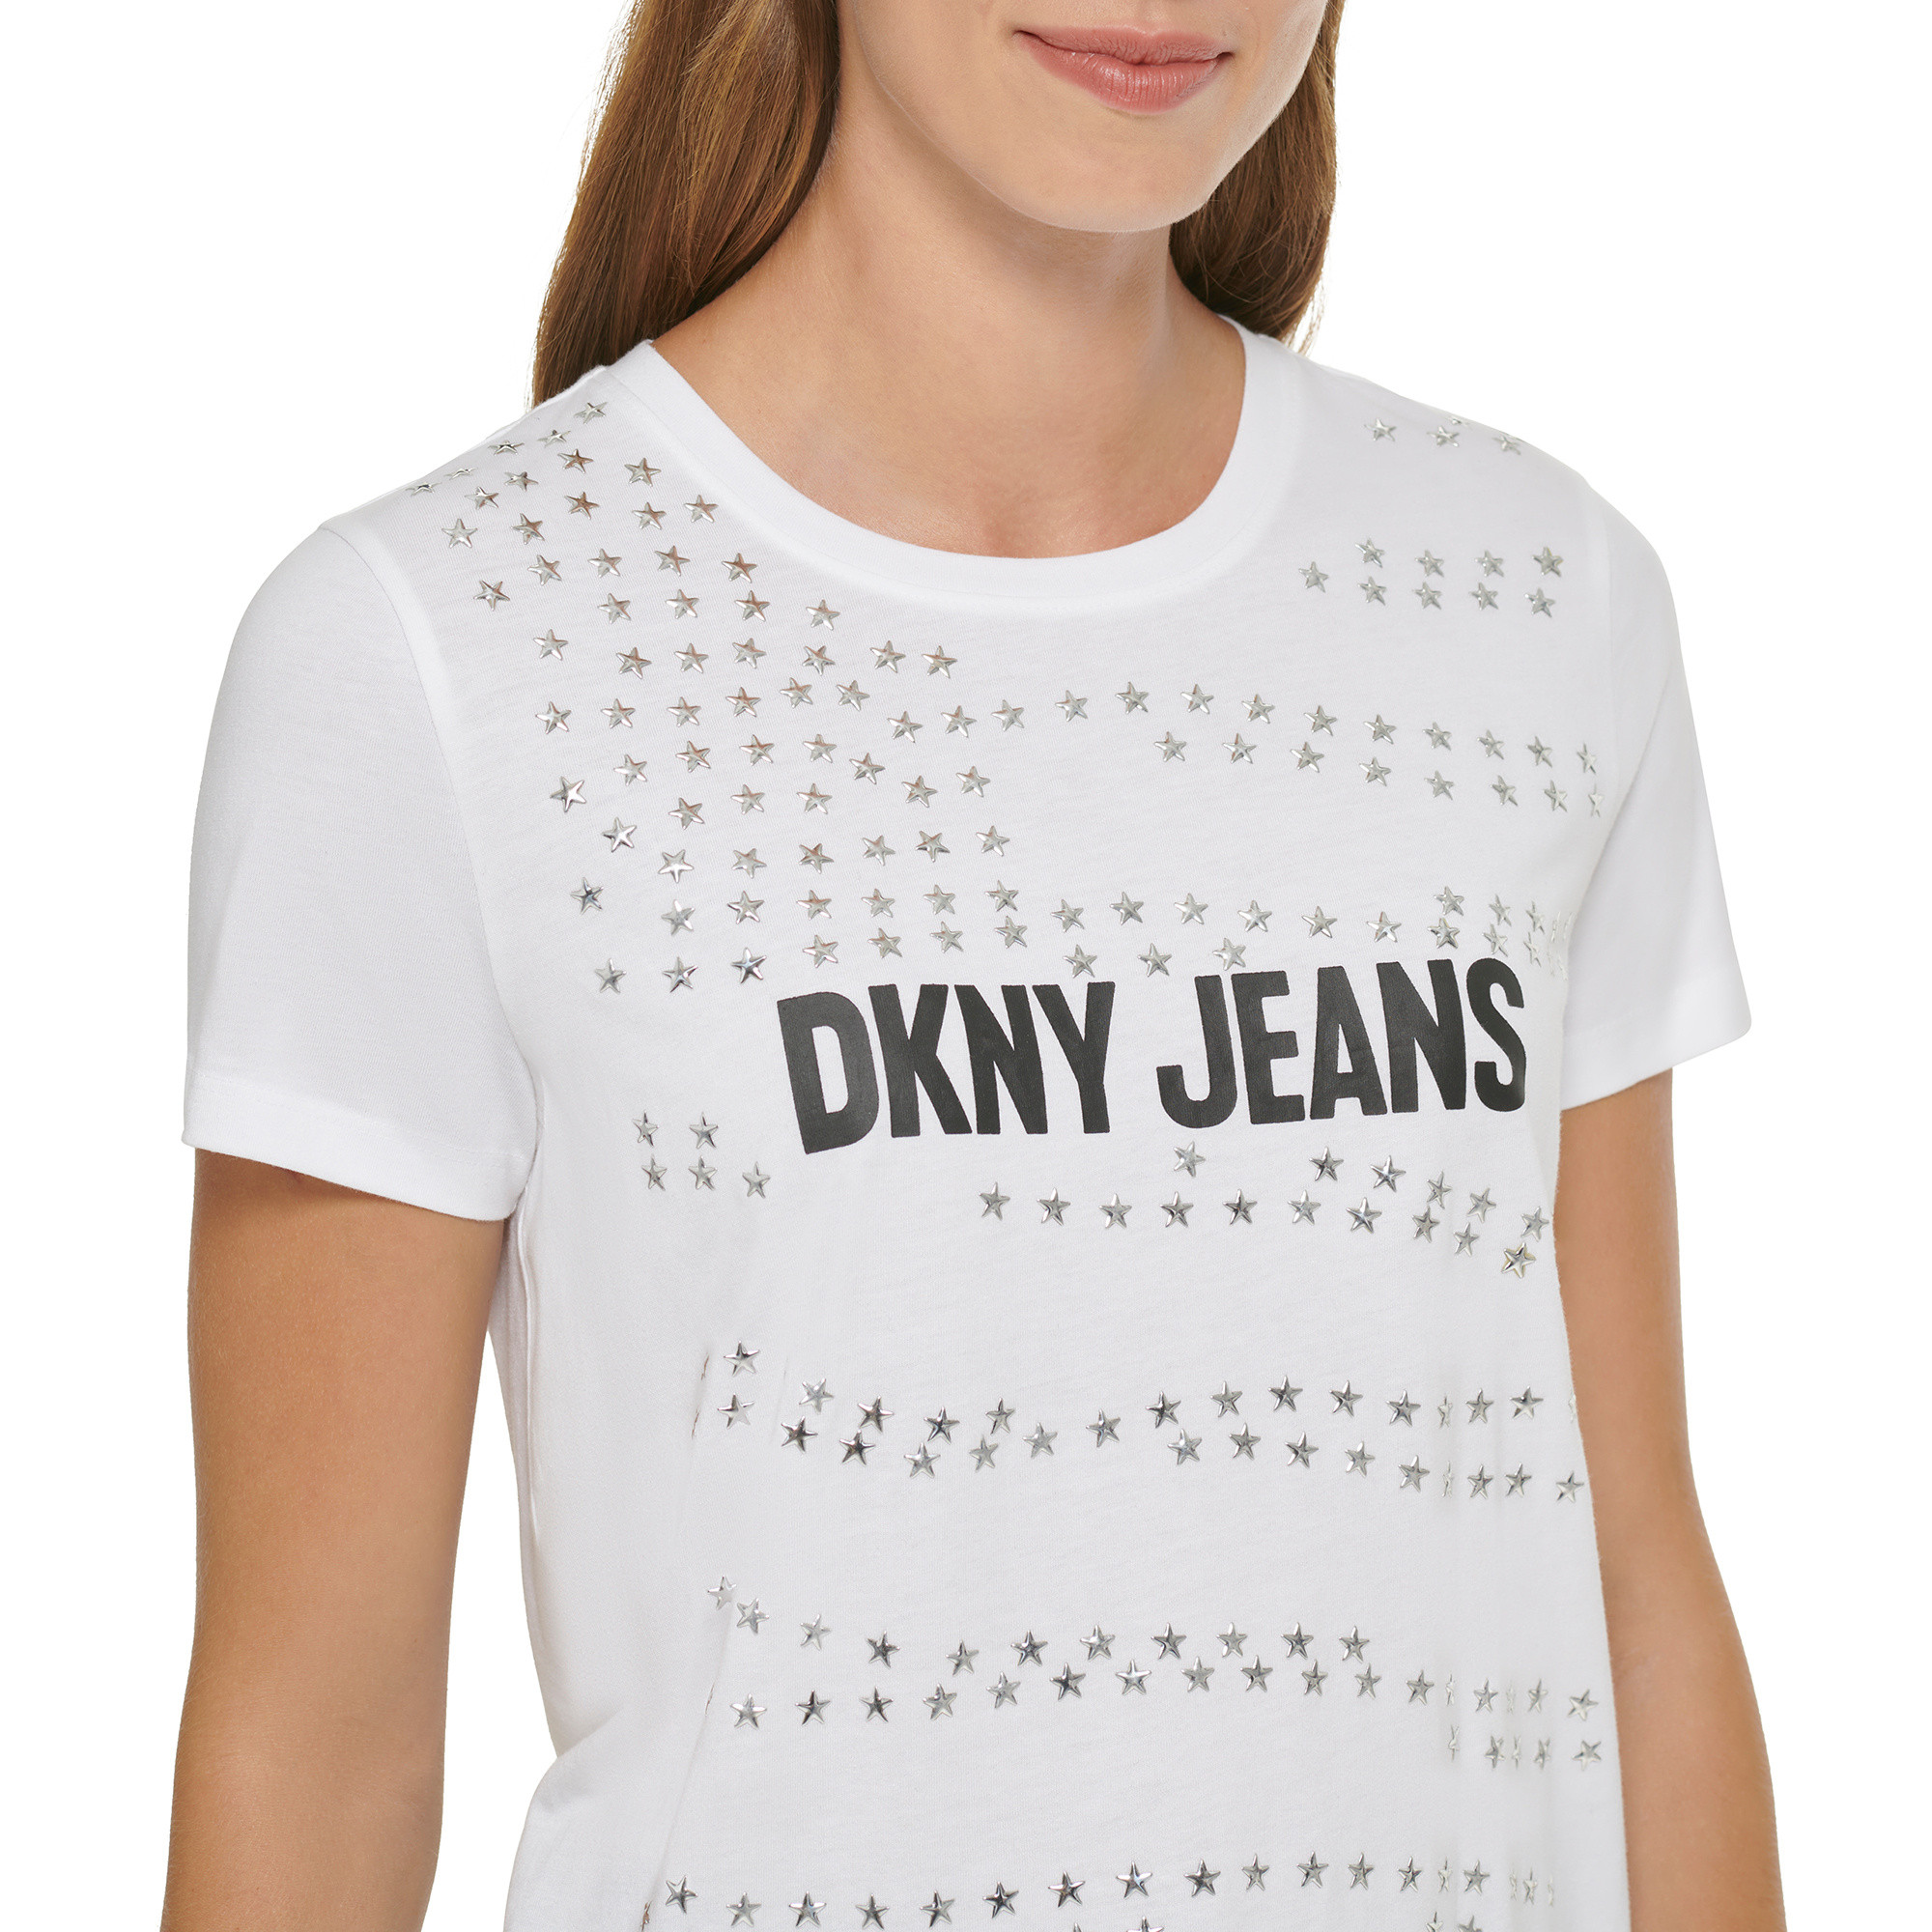 DKNY - Logo T-Shirt, White, large image number 2